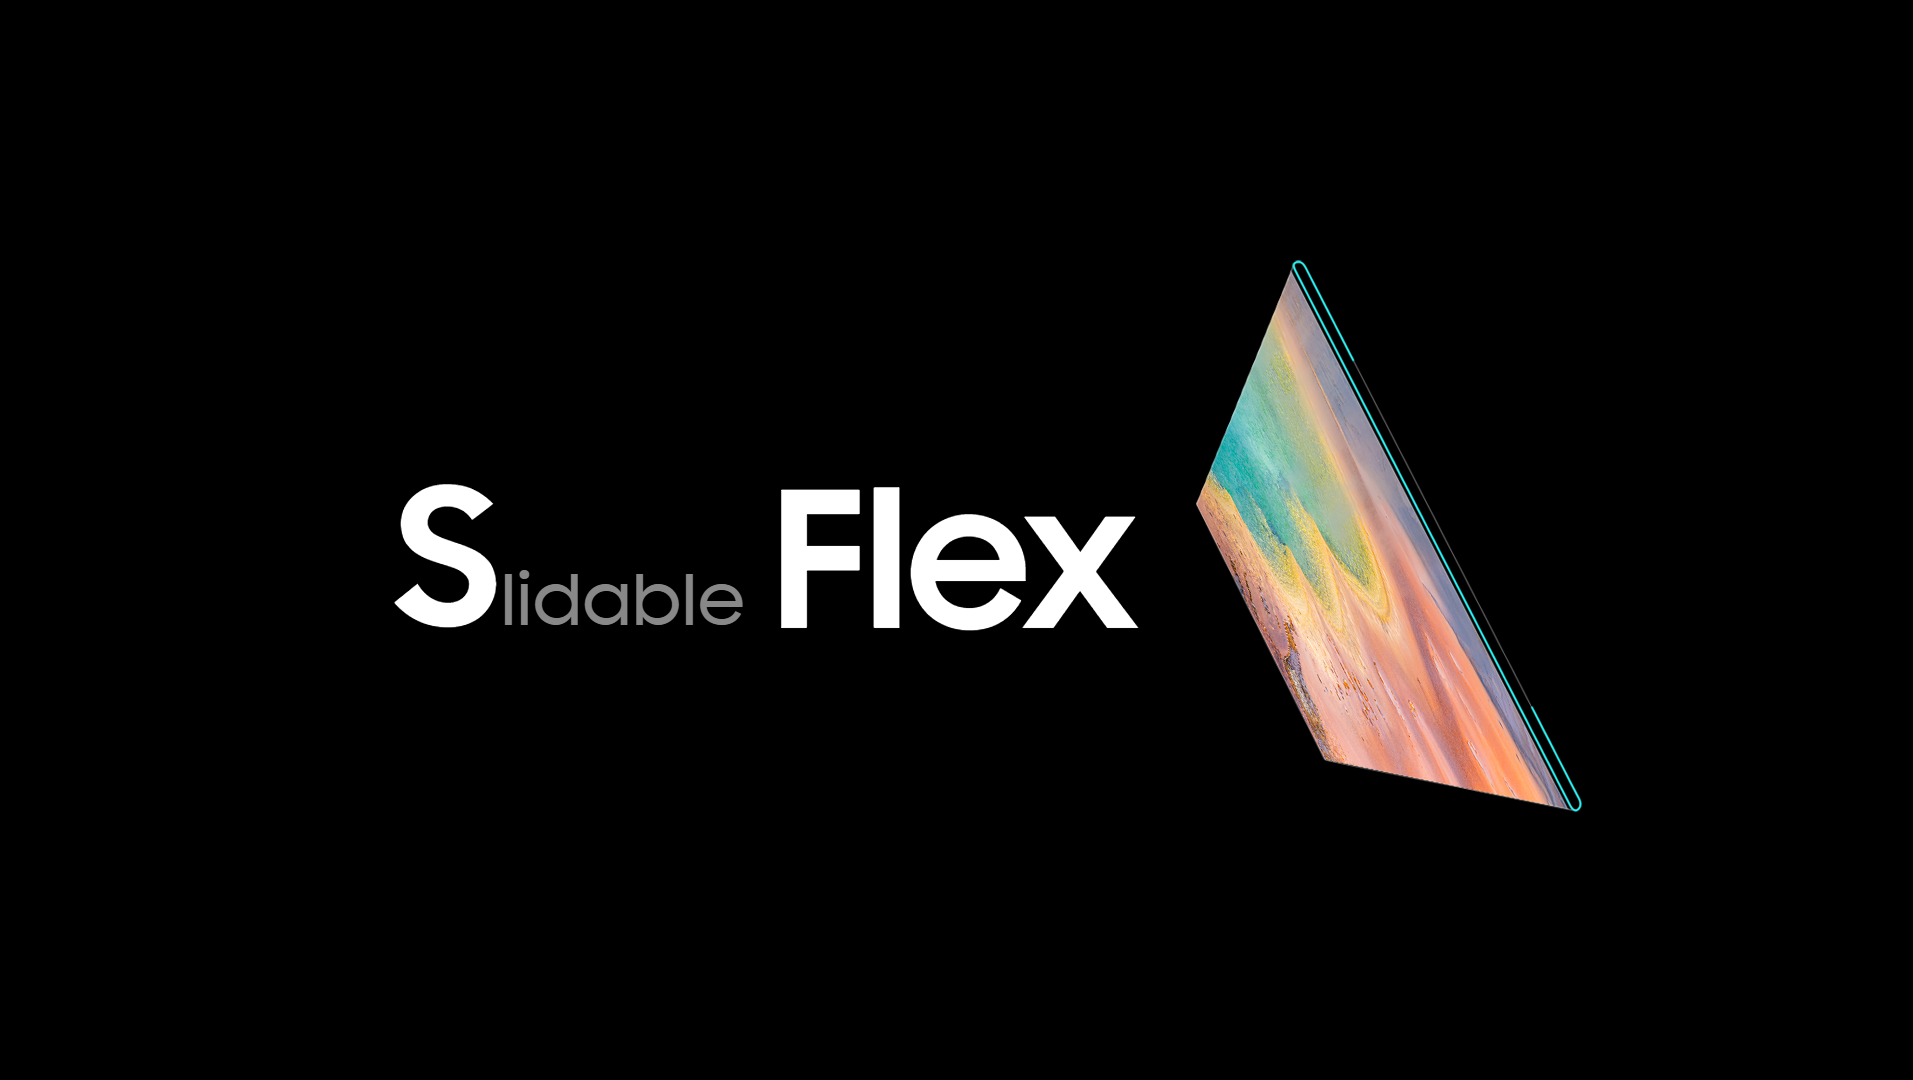 Images conceptuelles du site Web Samsung Flex OLED.